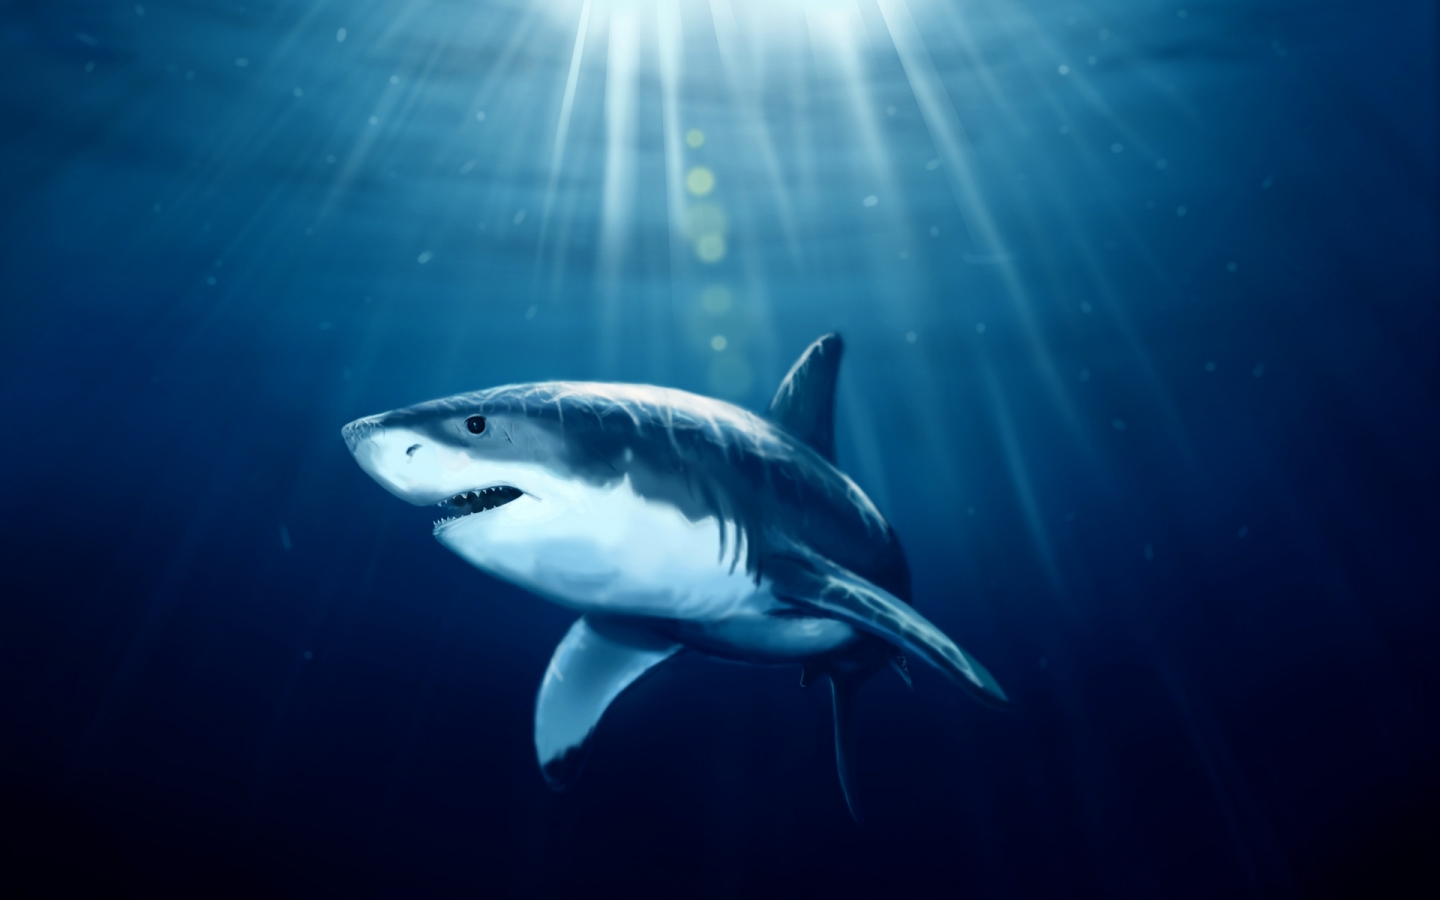 Shark Under Water for 1440 x 900 widescreen resolution